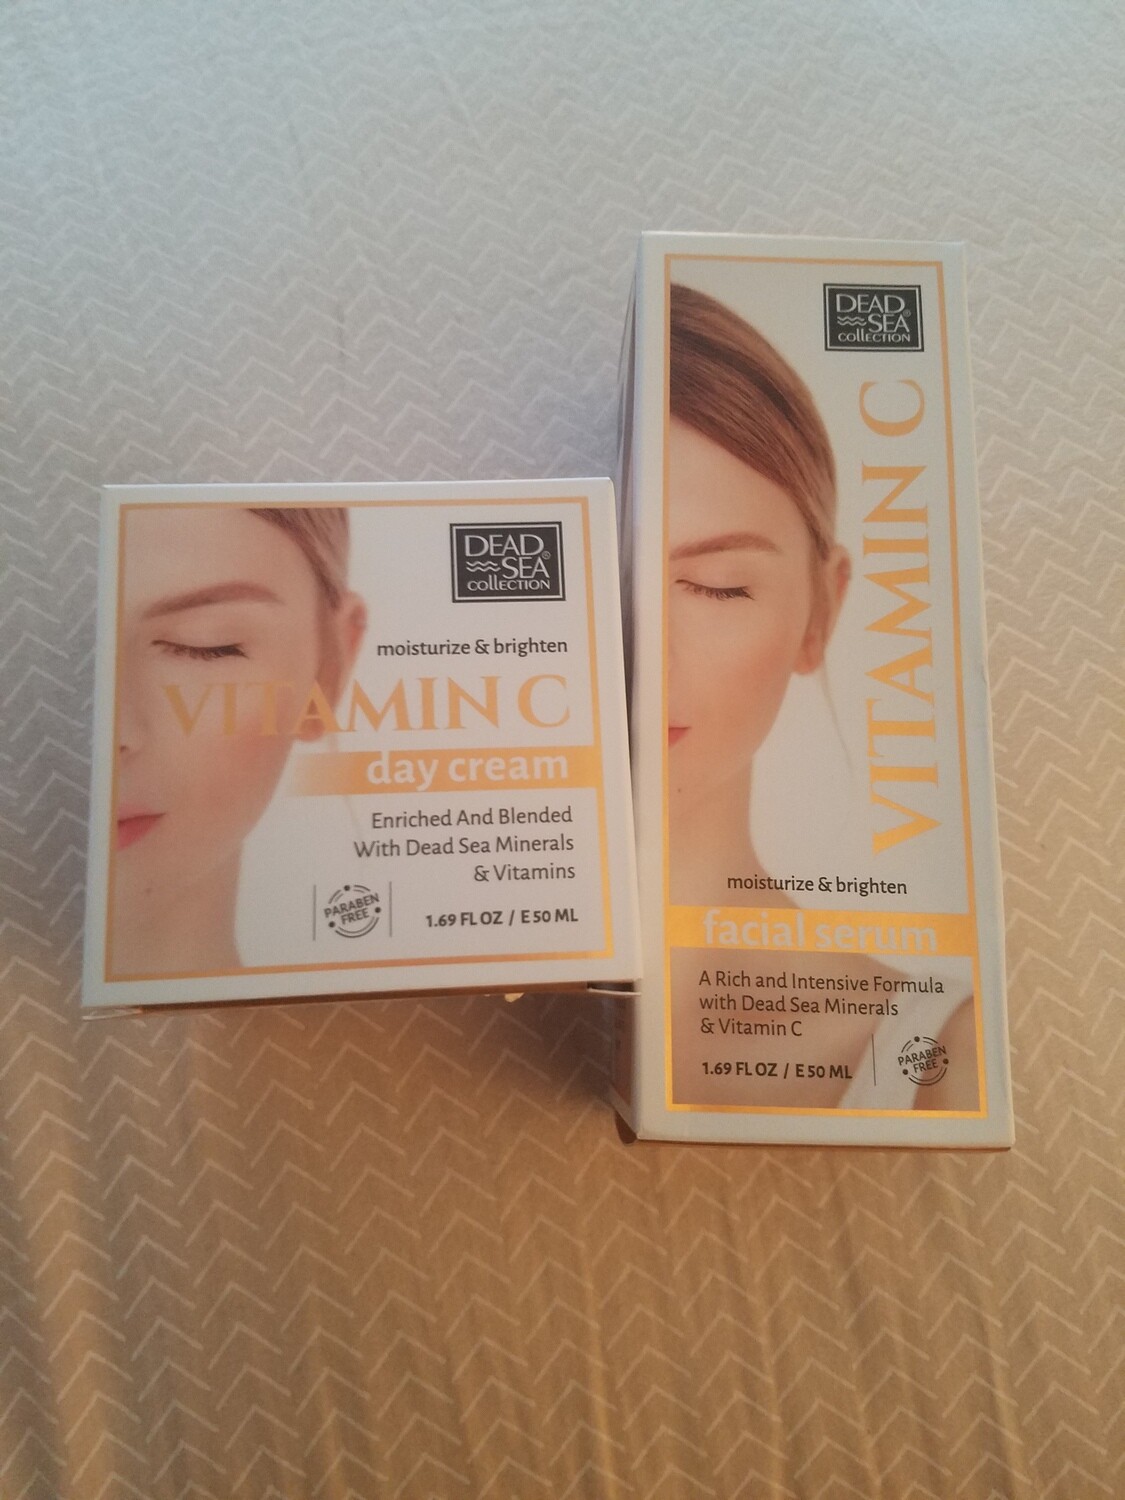 Vitamin C face Cream and serum set